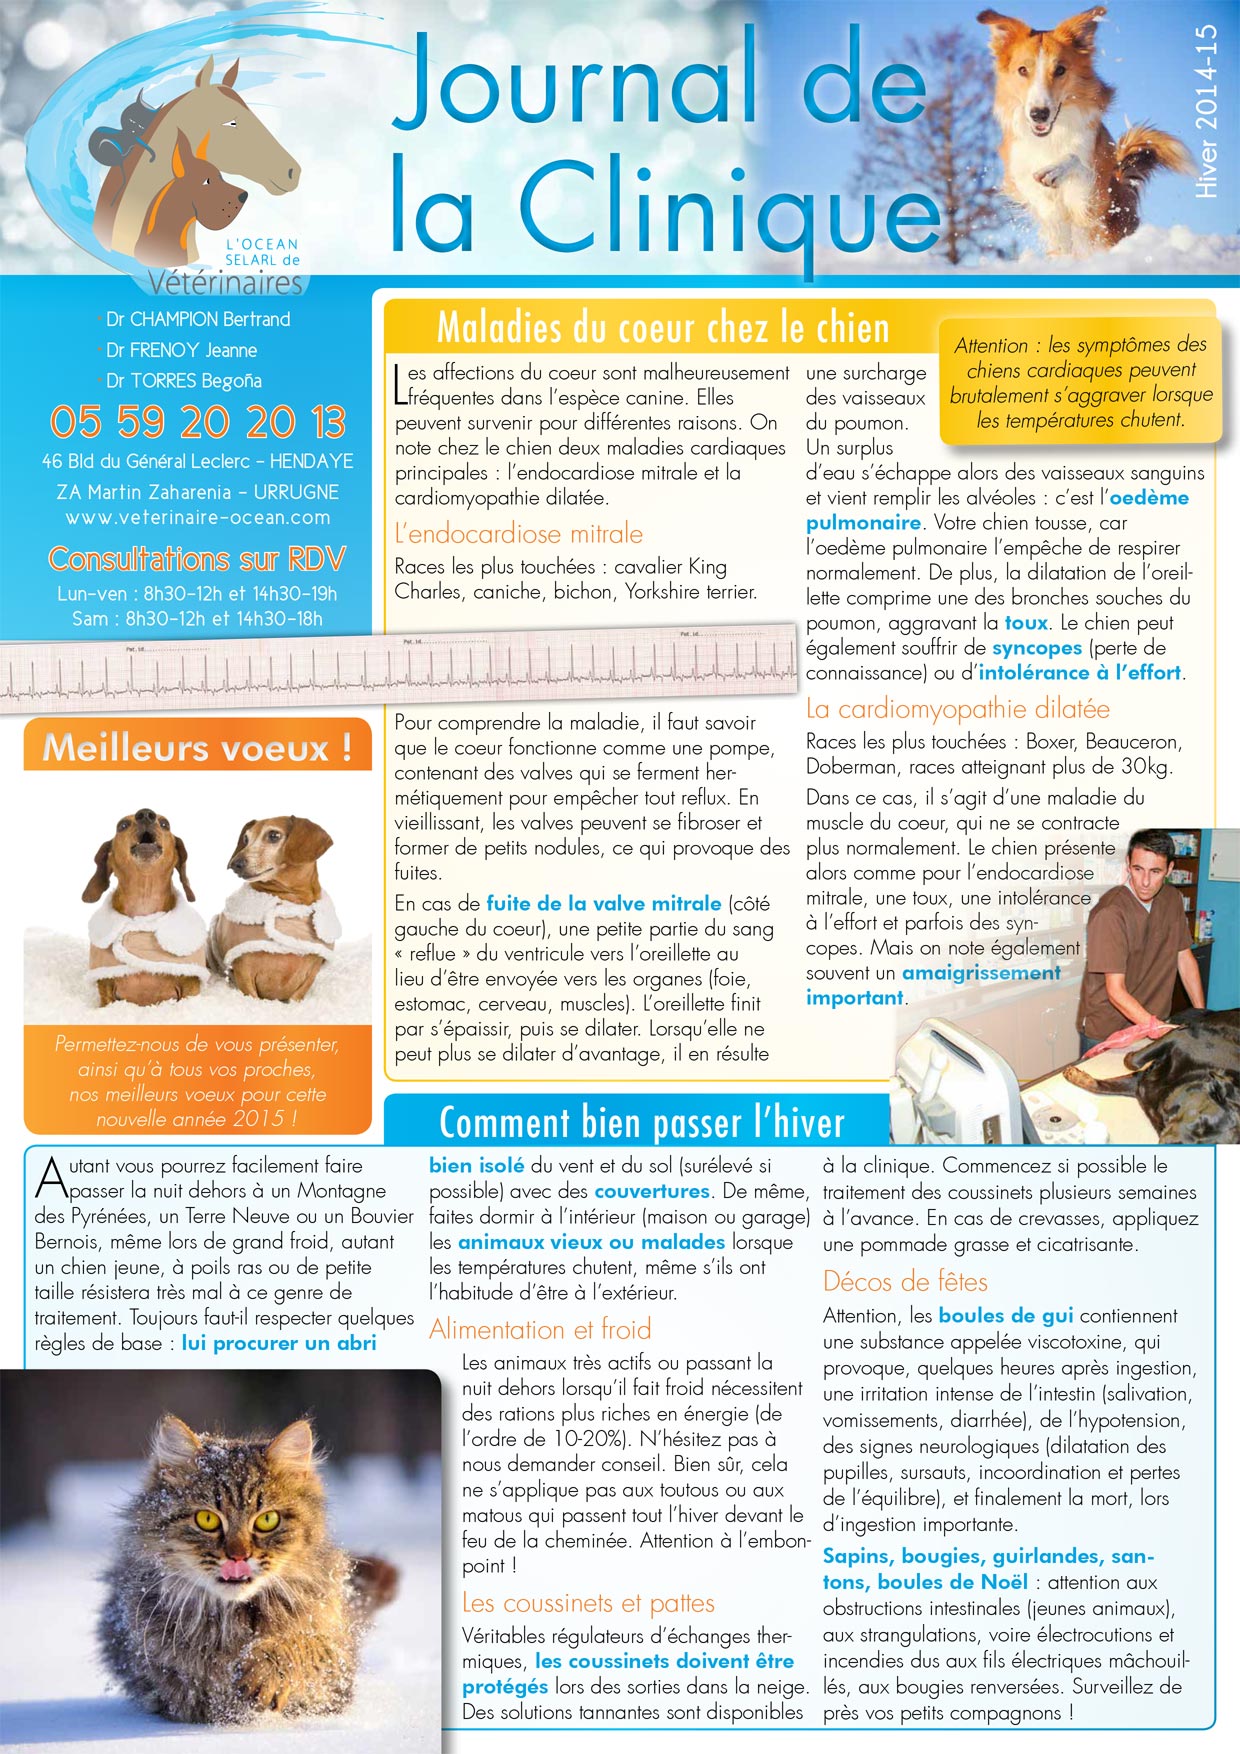 Le Journal de la Clinique - Hiver 2014-15 page 1